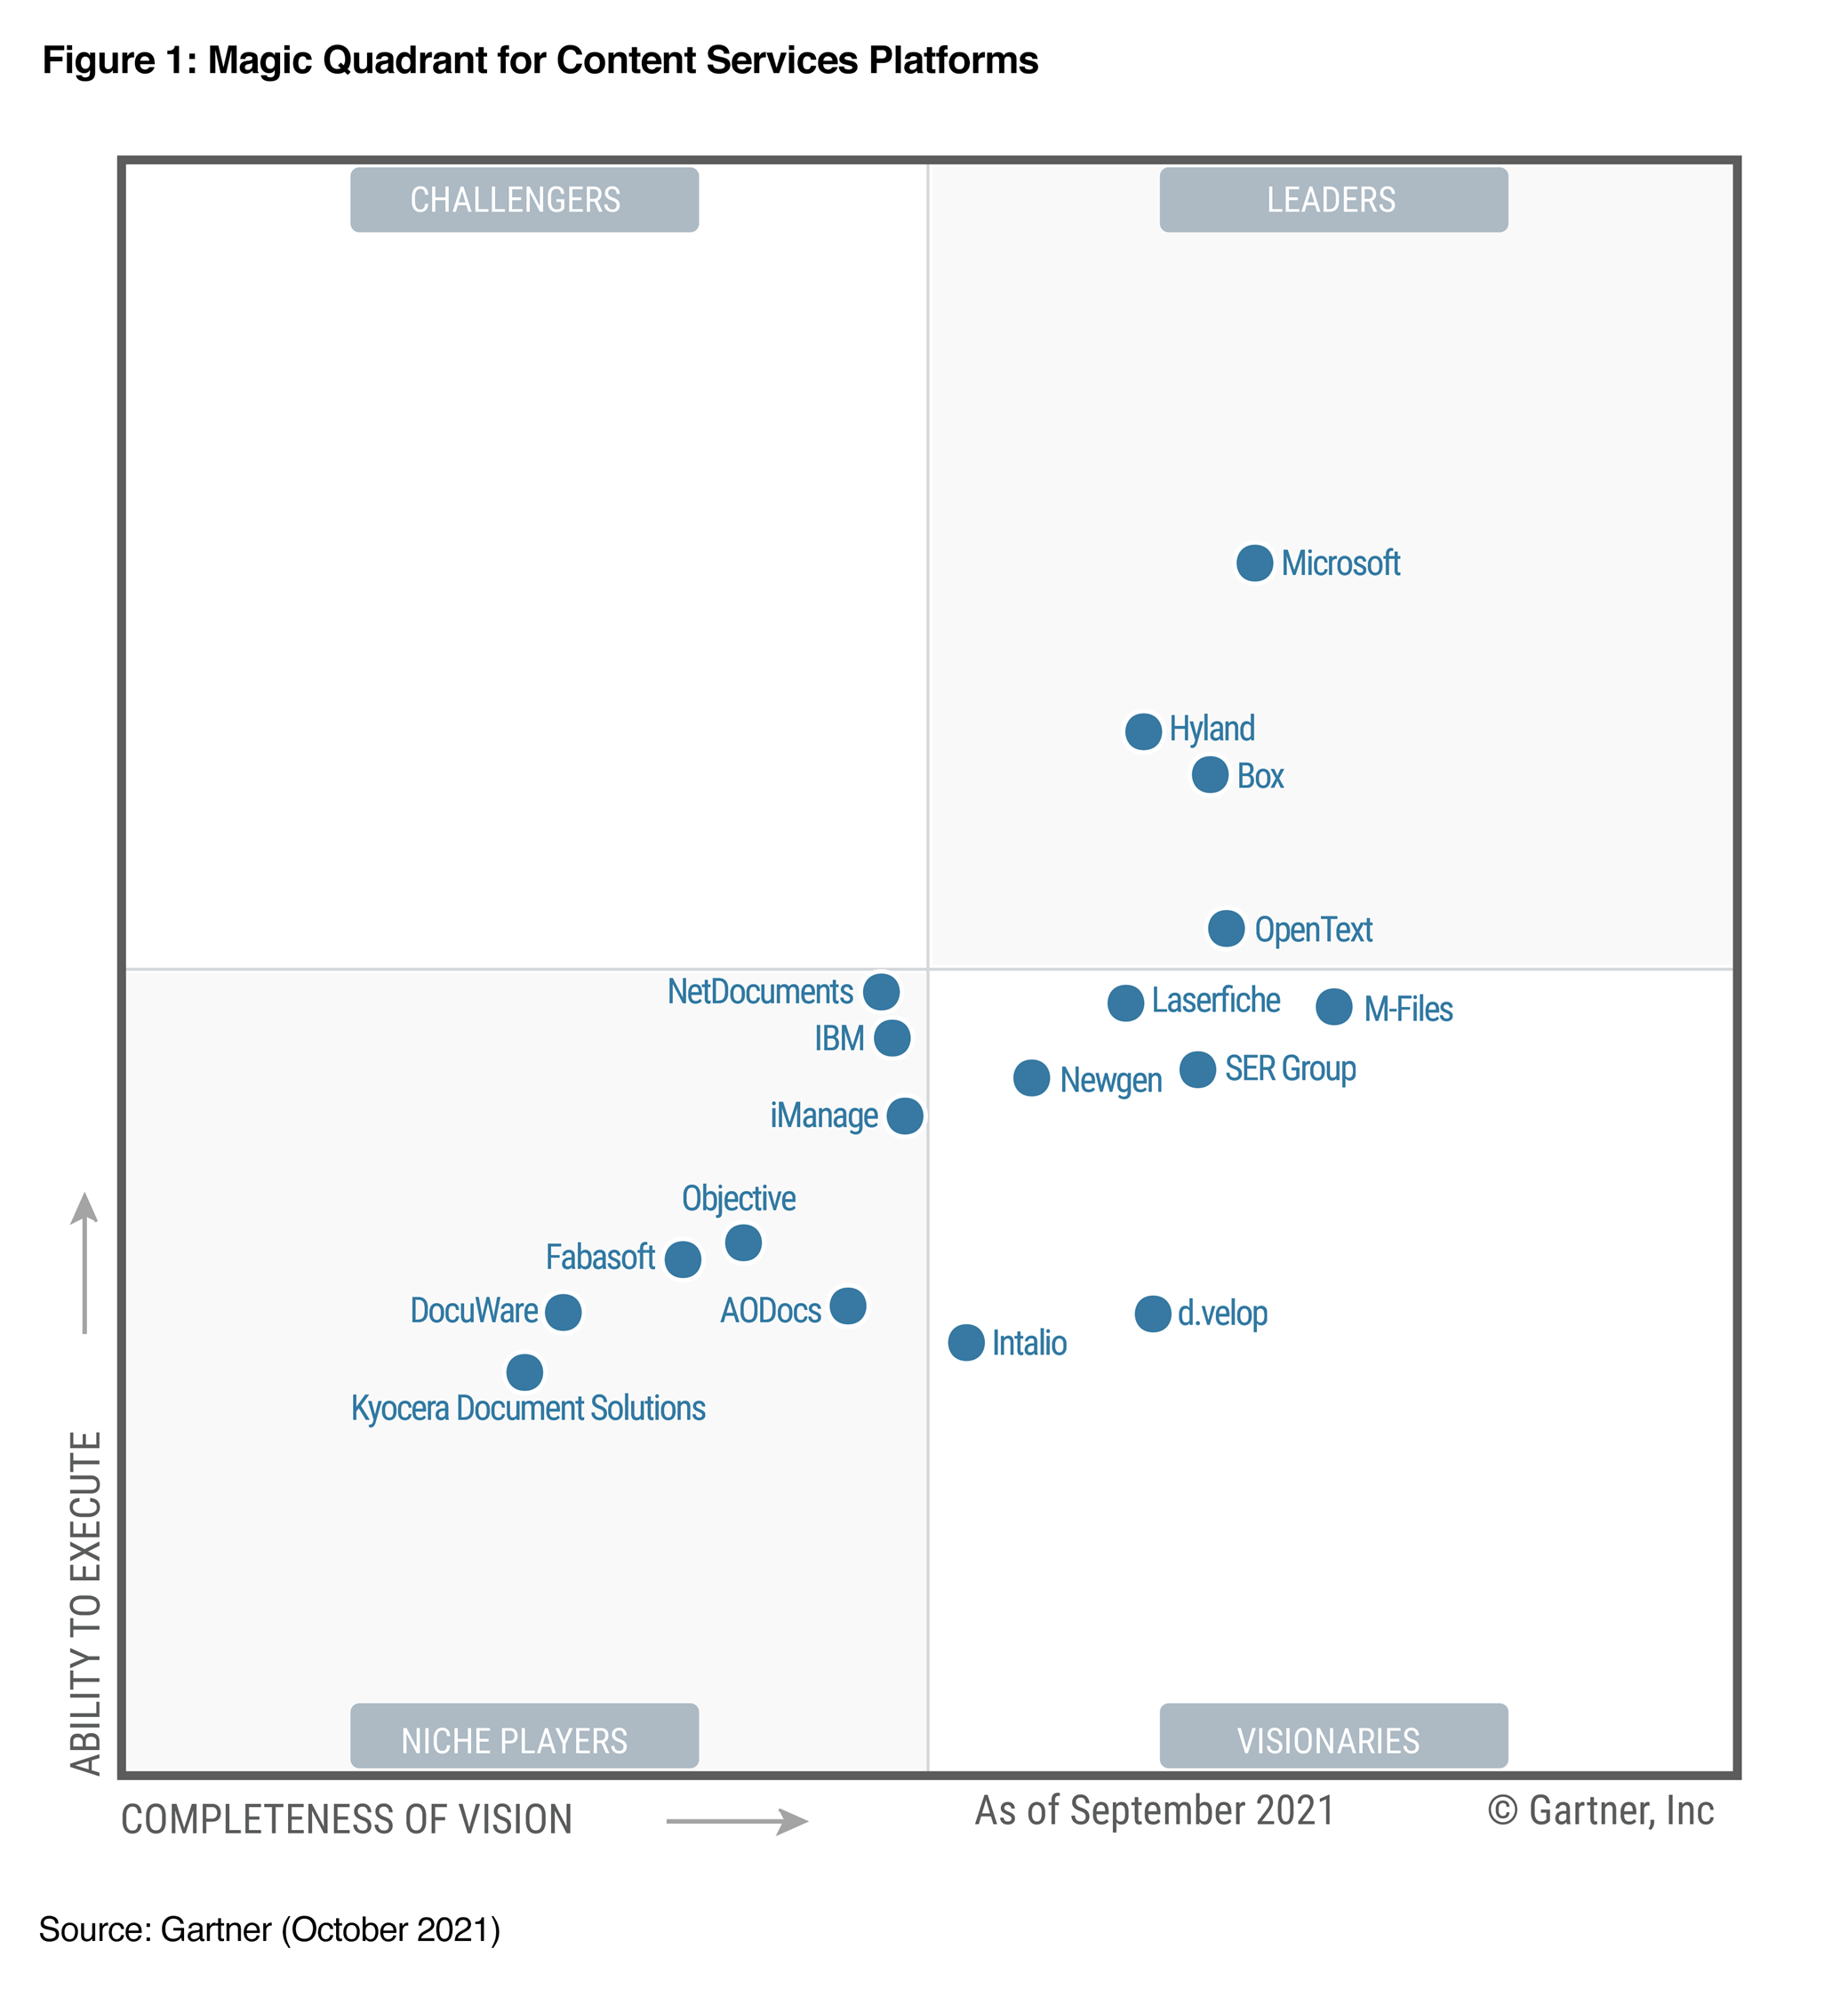 Gartner C S P M Q 2021 圖表顯示 Microsoft 位在右上角的「領導者」分類中。